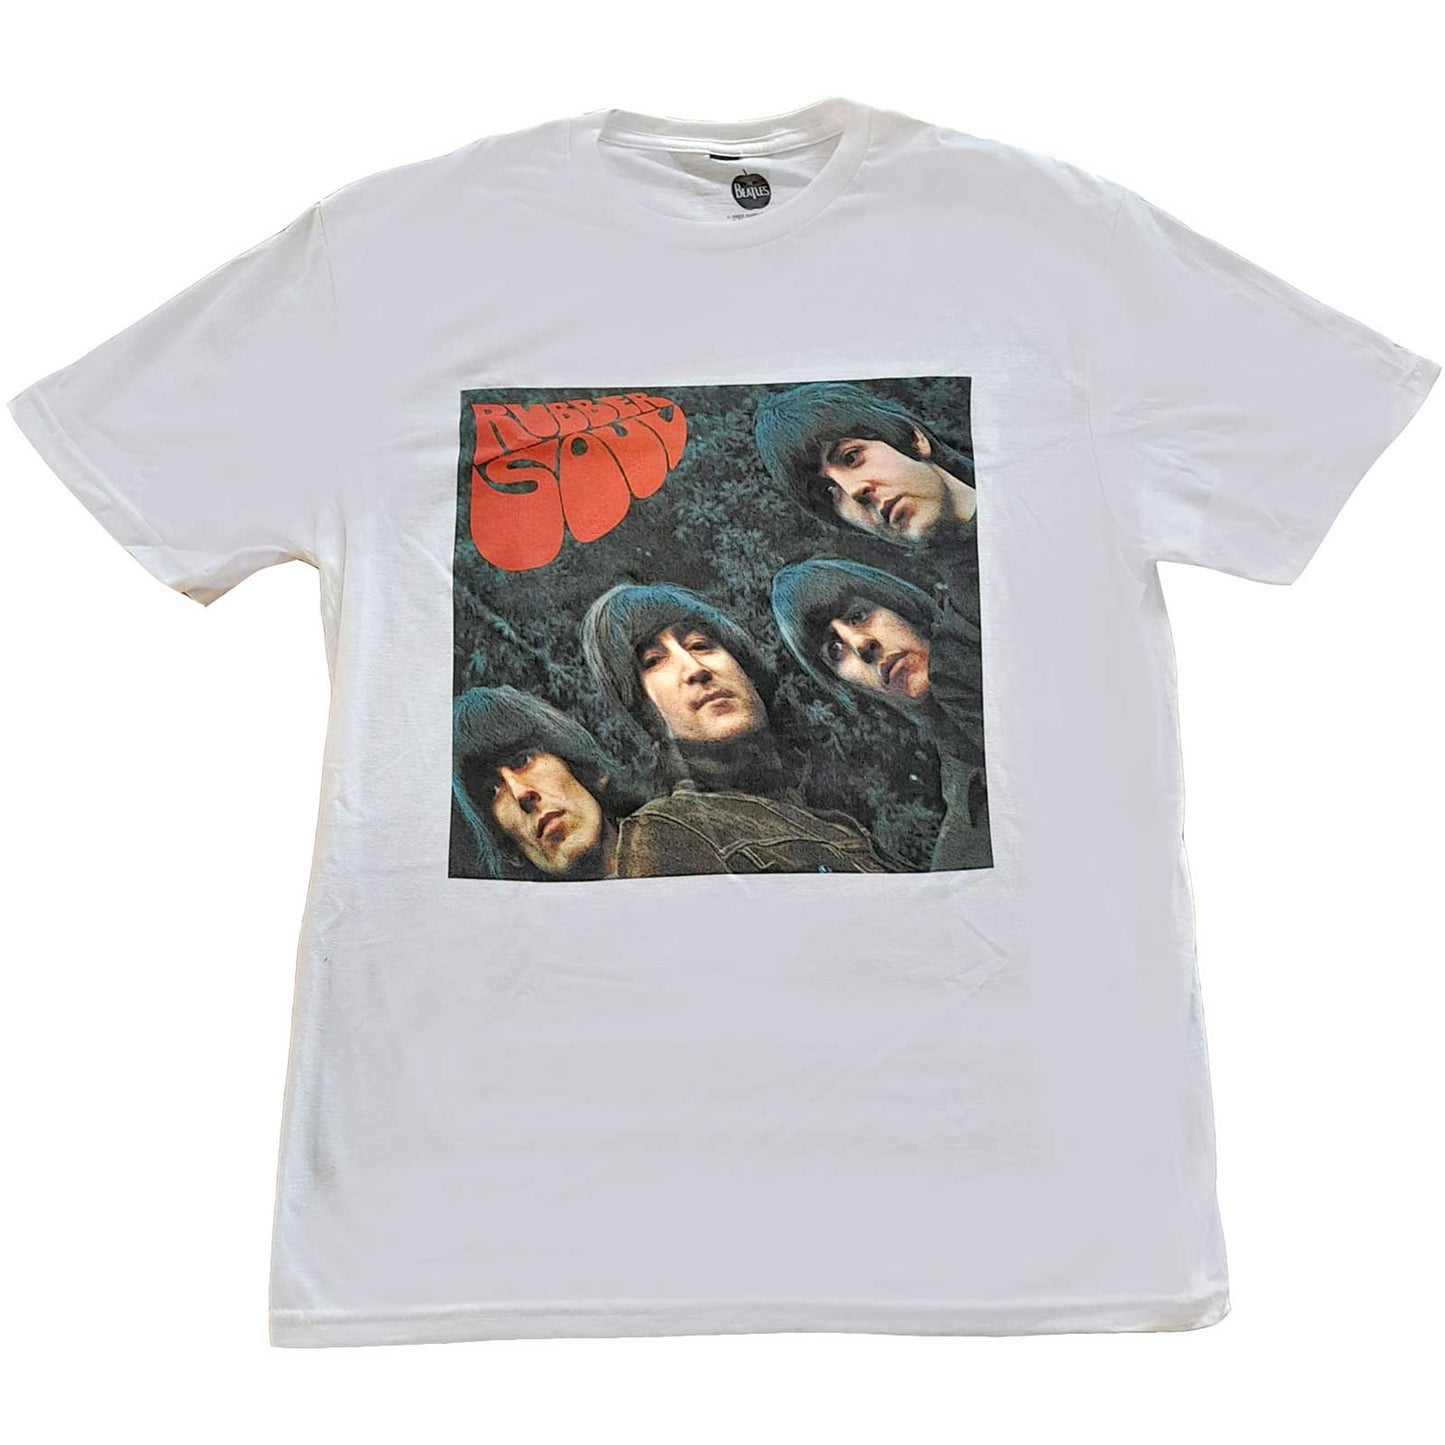 The Beatles Unisex T-Shirt: Rubber Soul Album Cover